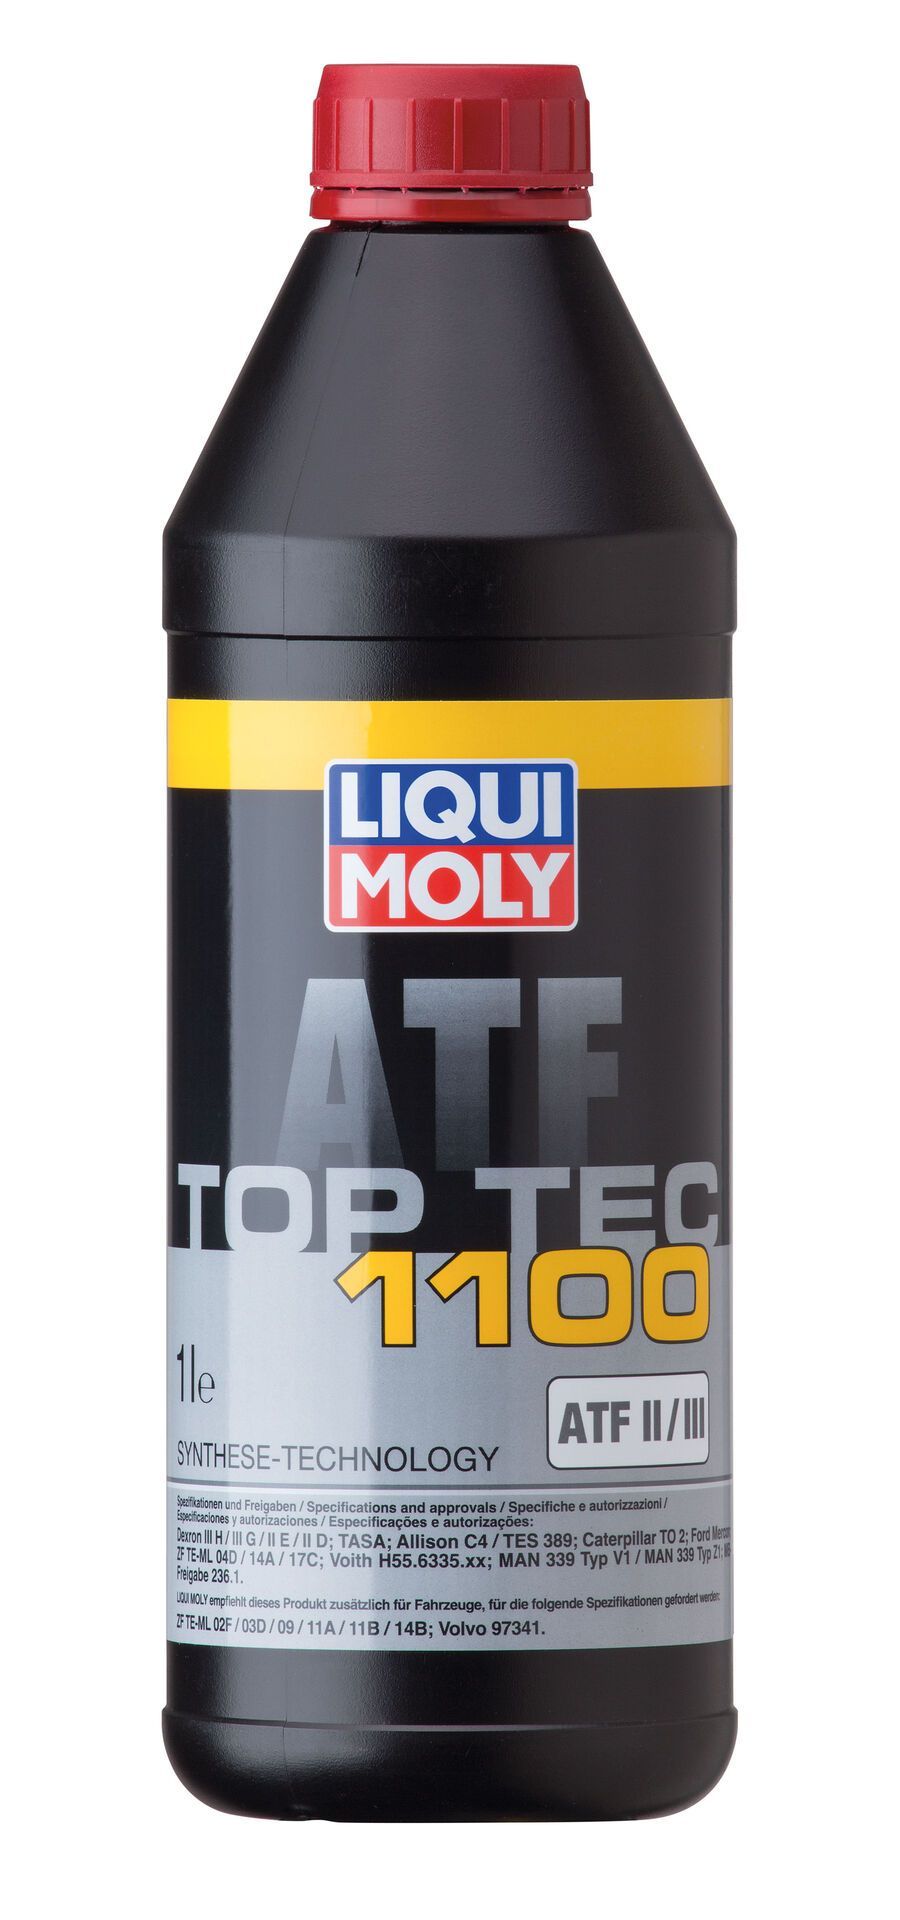 DẦU HỘP SỐ TỰ ĐỘNG LIQUI-MOLY ATF TOP TEC 1100 II/III 1L - 3651